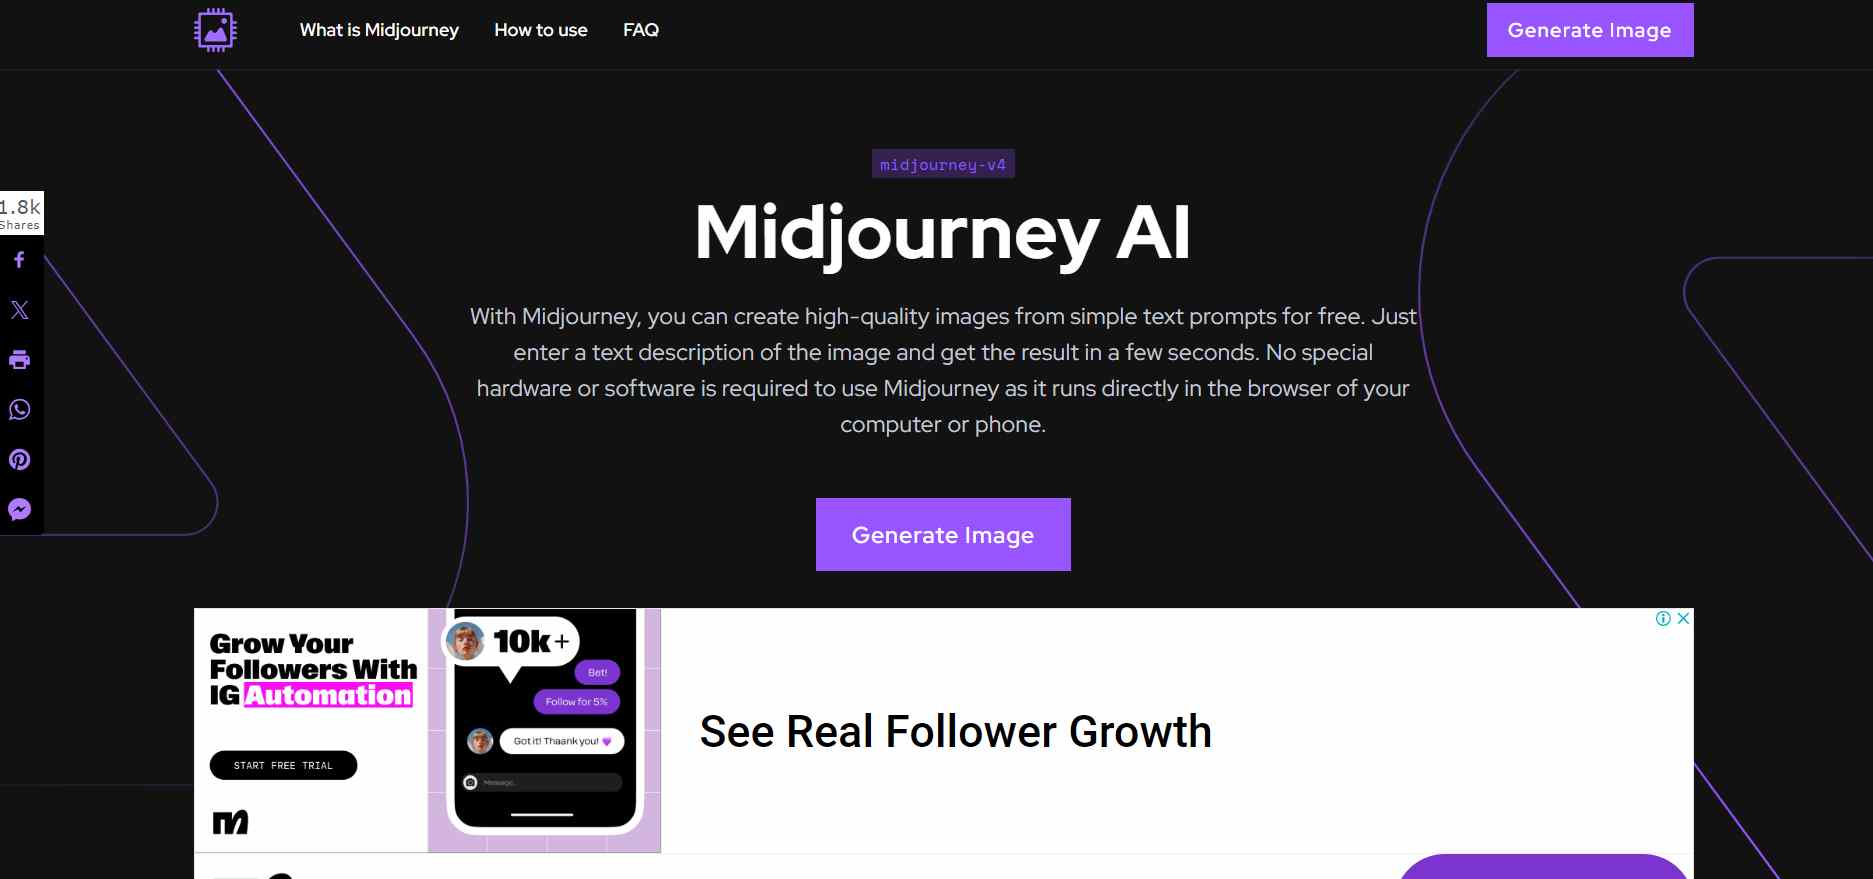  Esplora Midjourney, uno strumento generatore di AI leader, con testo stilizzato e possibilmente elementi grafici indicativi di innovazione e tecnologia. 